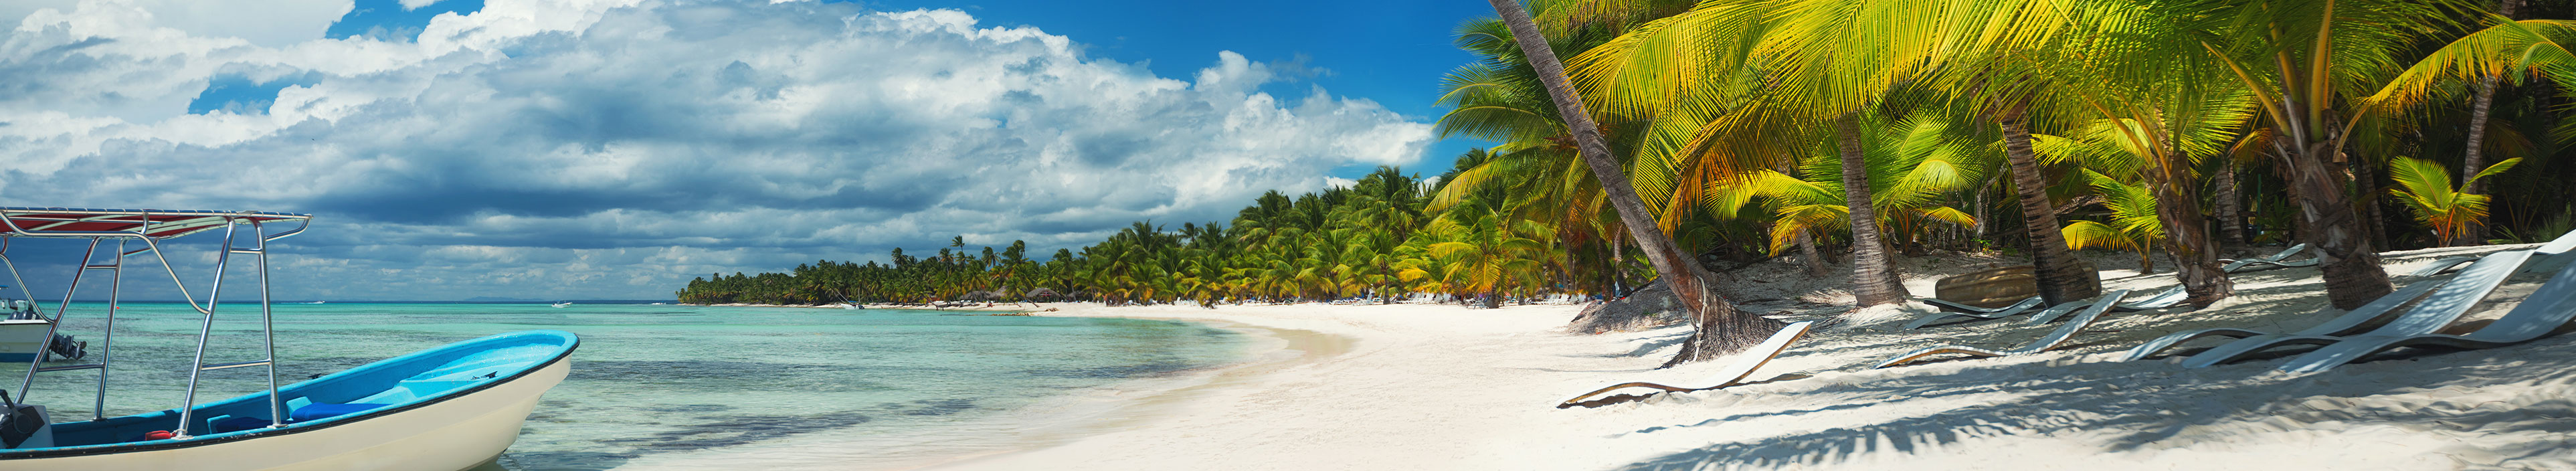 Urlaub Dominikanische Republik. Weißer Sandstrand mit vielen grünen Palmen.